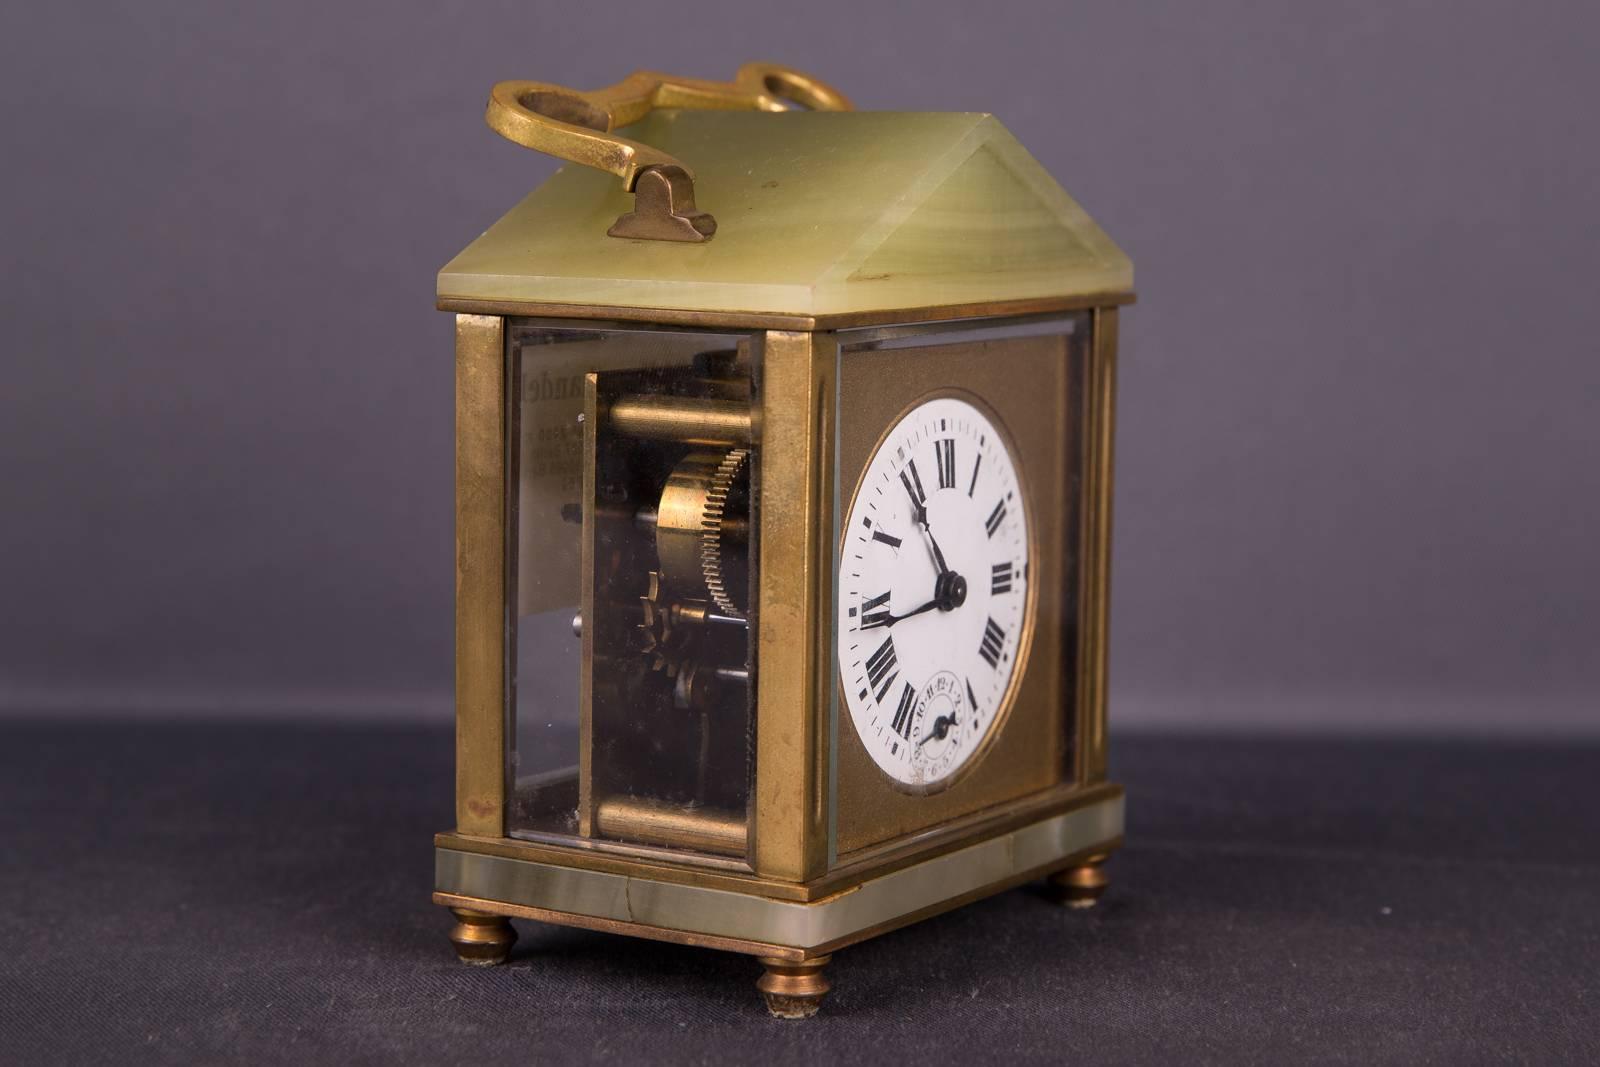 19th century alarm clock